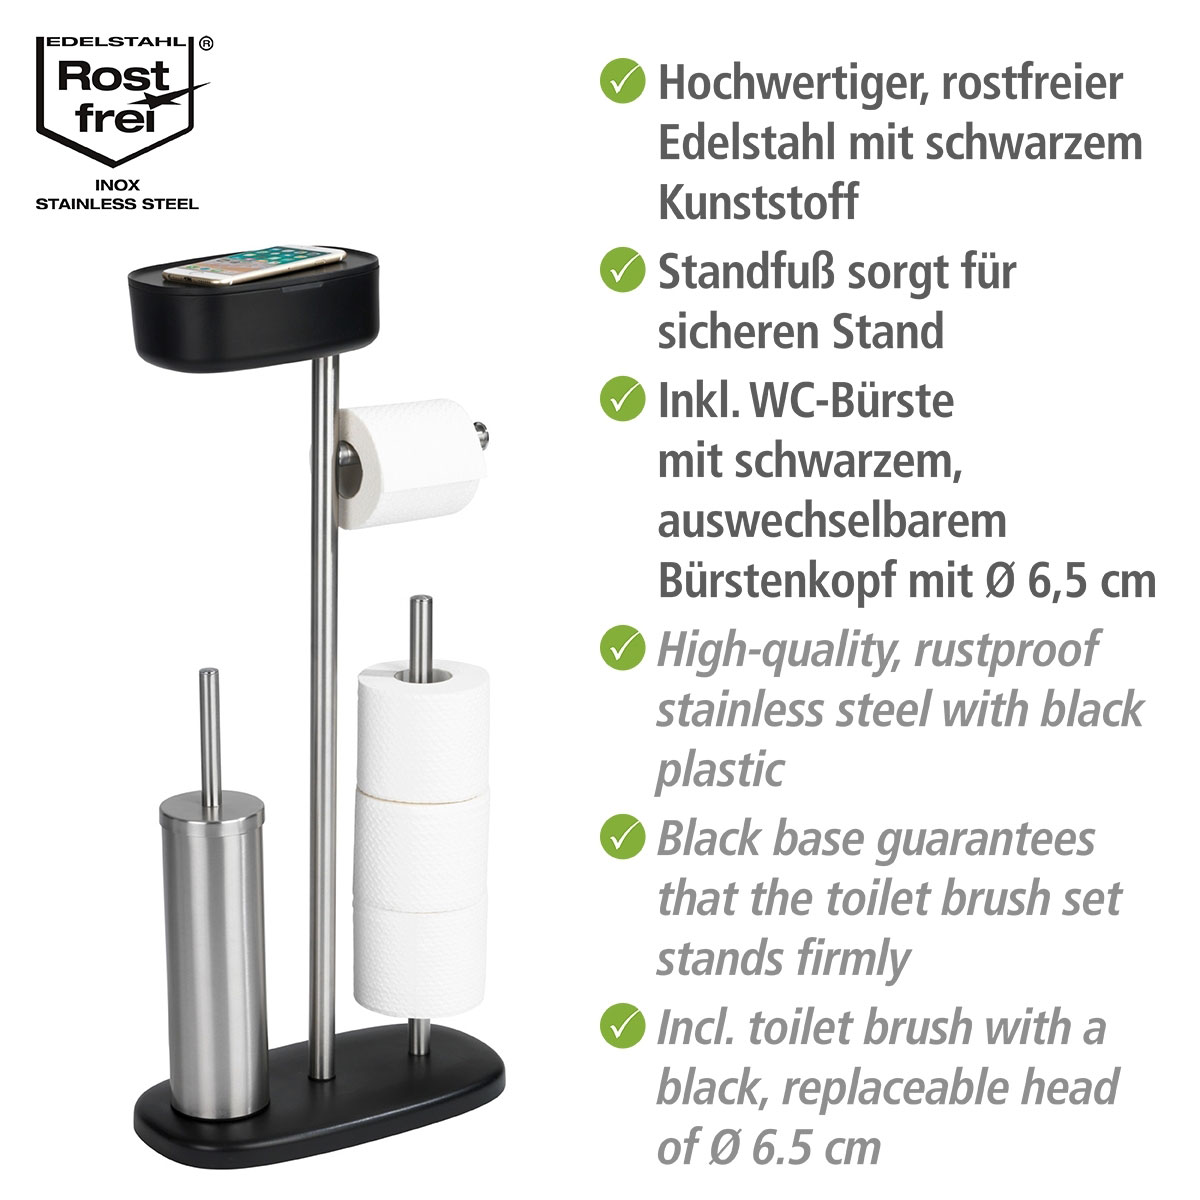 Wenko Stand WC-Garnitur mit Box Rivazza Schwarz integrierter  Toilettenpapierhalter Ersatzrollenhalter und WC-Bürstenhalter mit Ablagebox  | 514826